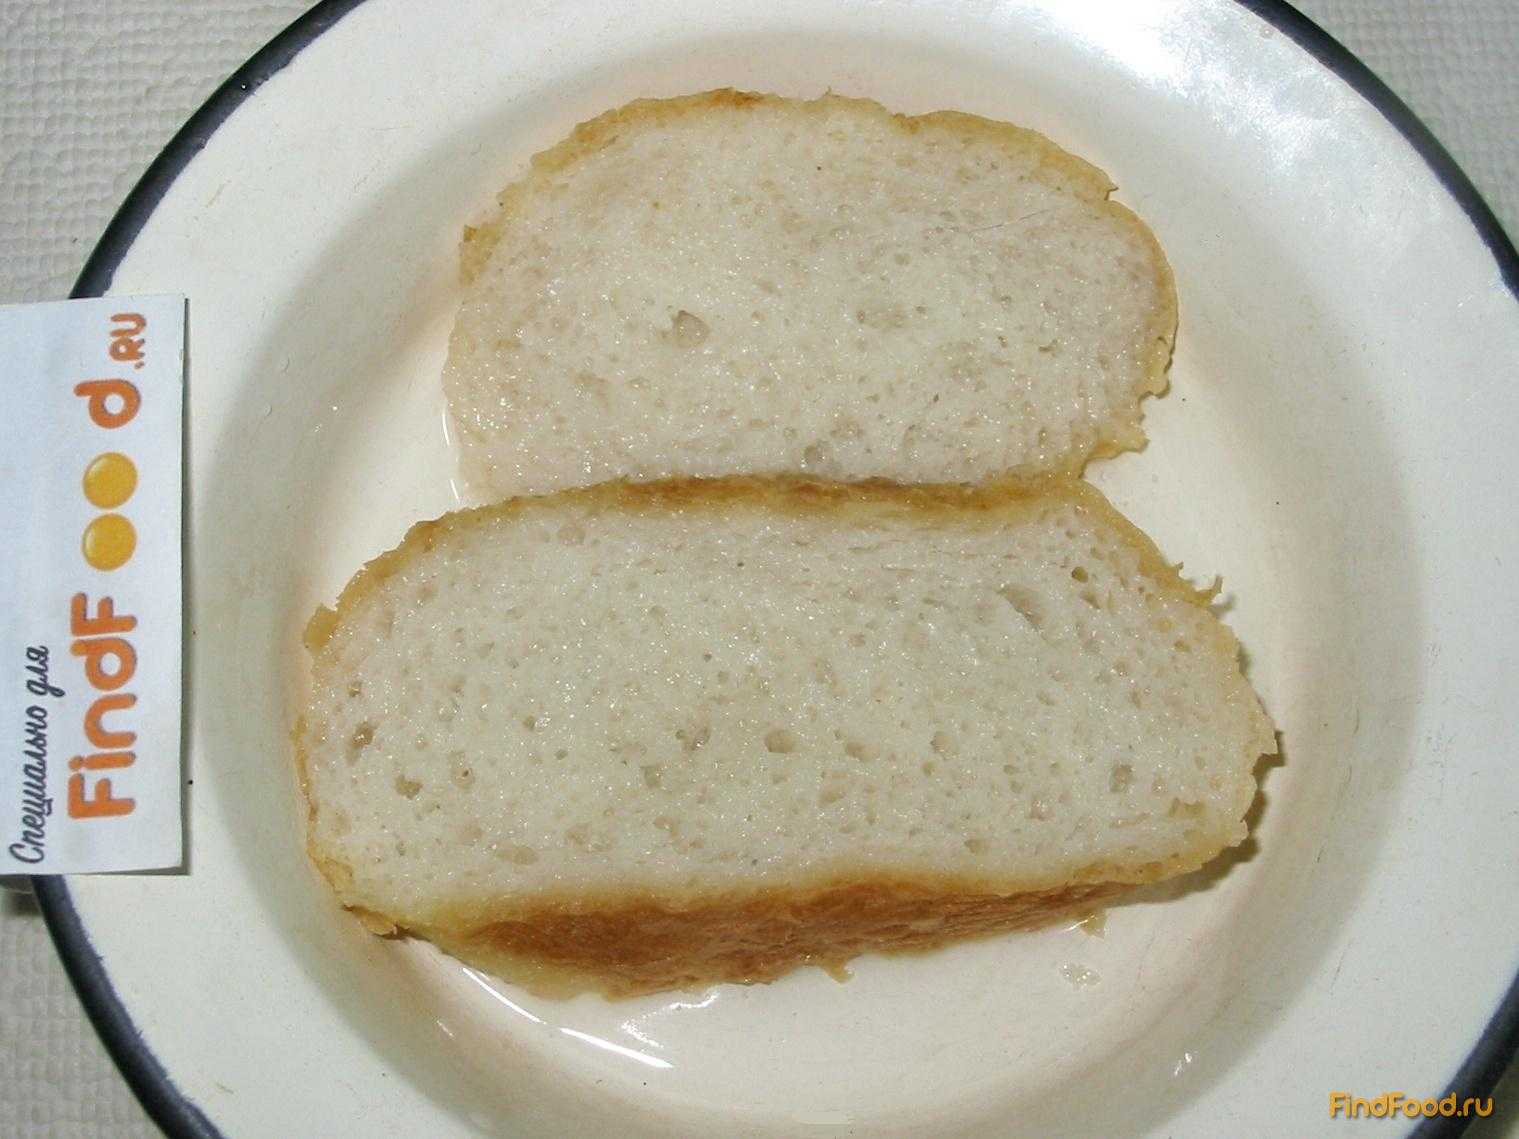 Размоченный хлеб. Оладьи на молоке без яиц рецепт. Хлеб печеночный без манки как колбаса. При геморрое можно есть оладьи, ведь они как белый хлеб. Хлеб с майонезом рецепт